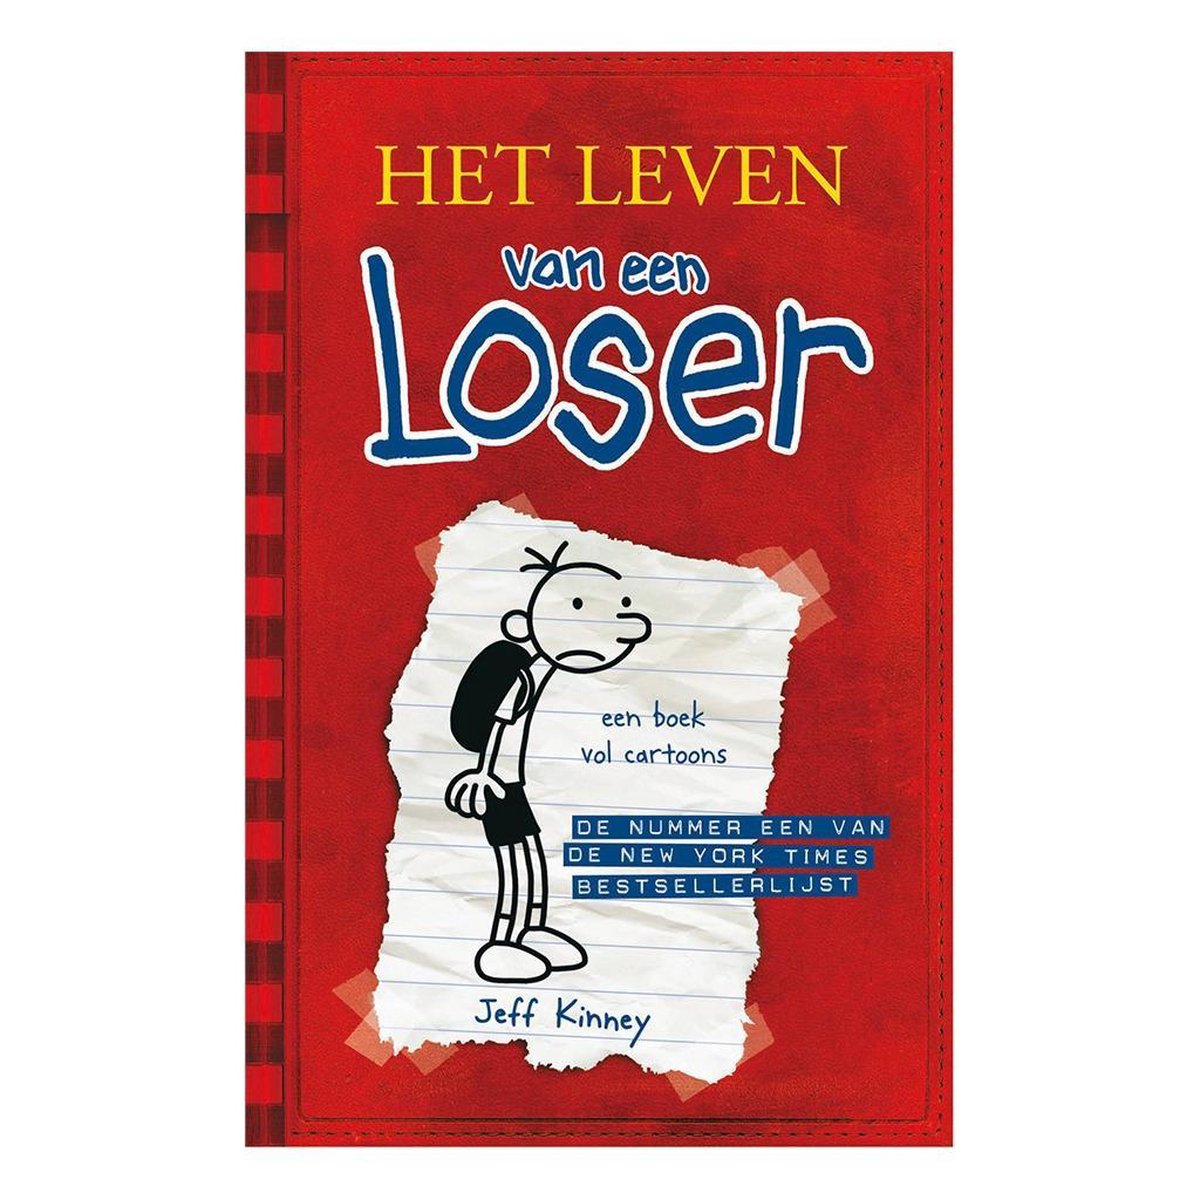 Het leven van een Loser 1 - Het leven van een Loser - Jeff Kinney